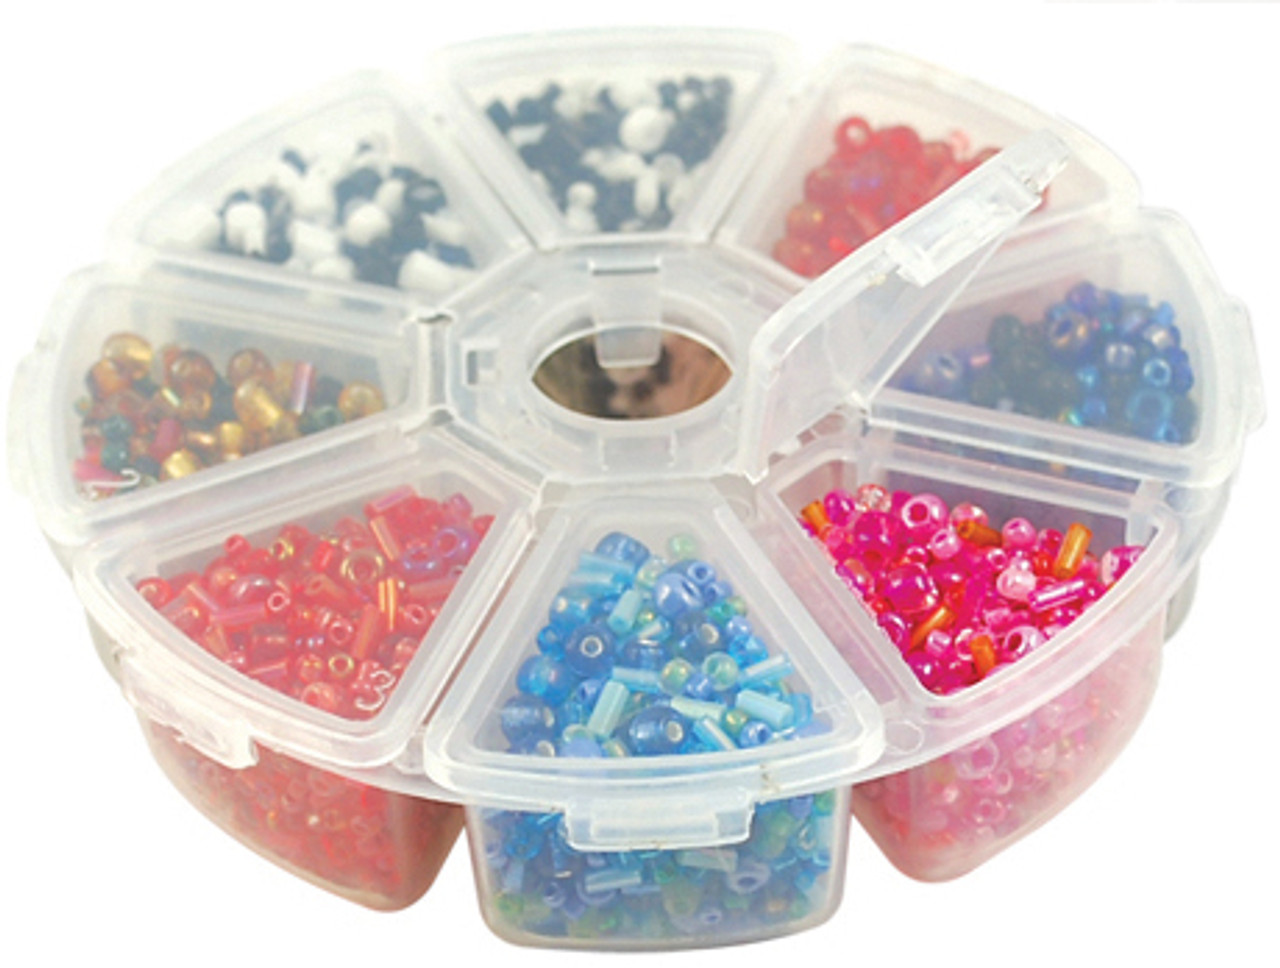 Craft Medley Craft and Bead Storage Organizer Box-4 PB808 - GettyCrafts